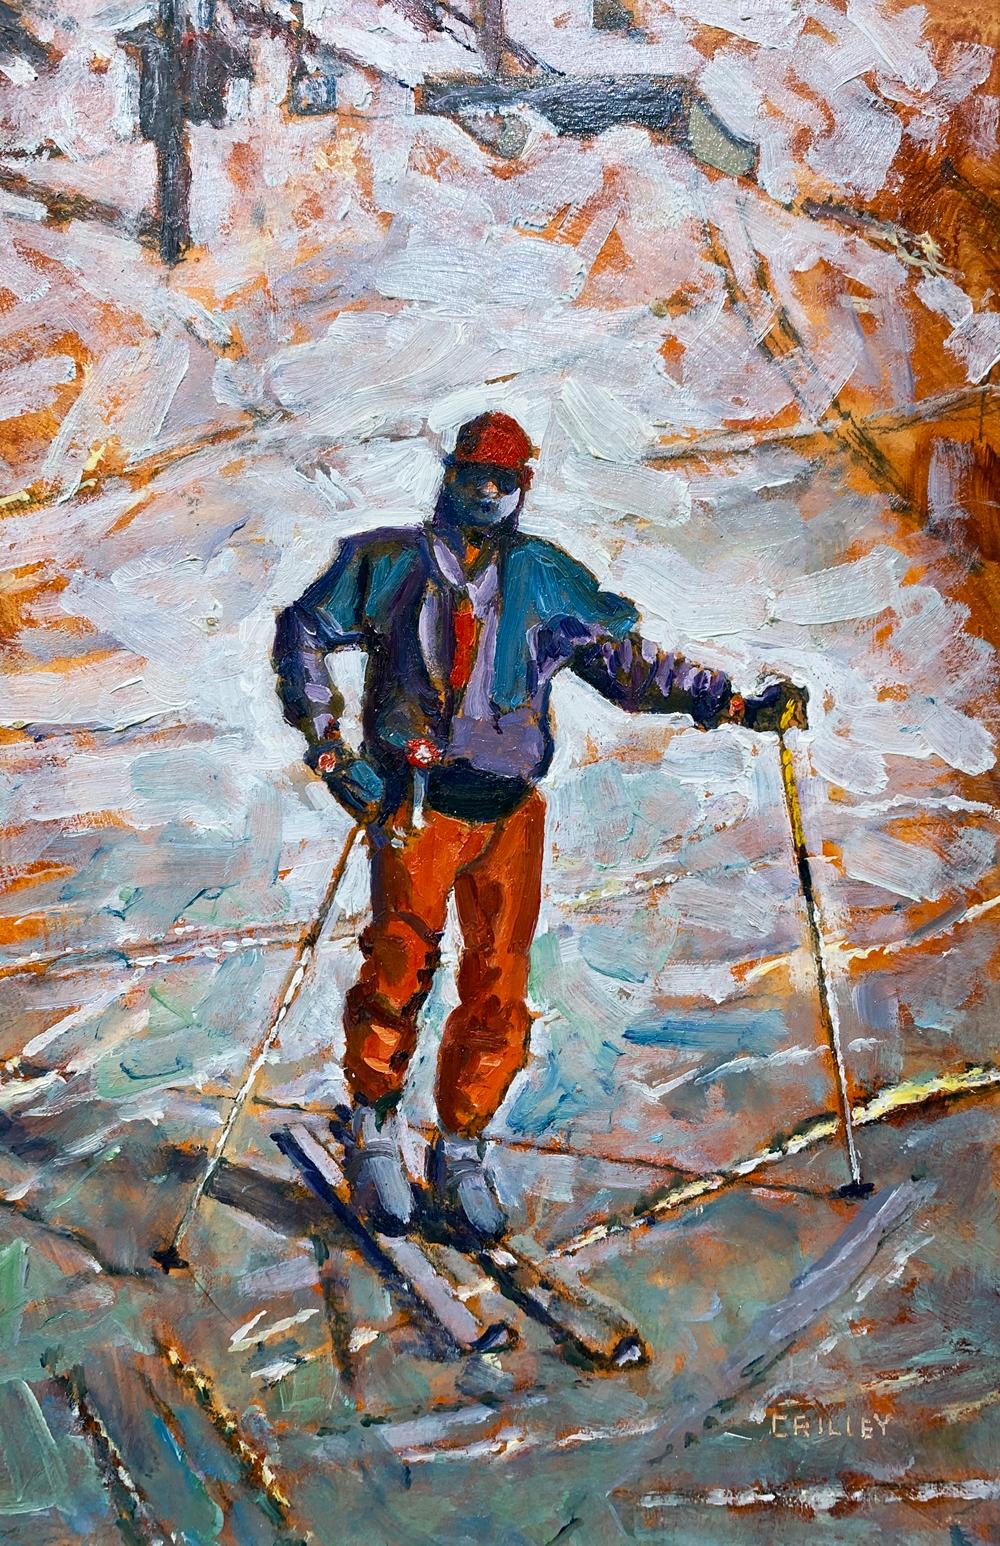 Joe on Skis, Self Portrait of the Artist in Snowy Landscape, 2007